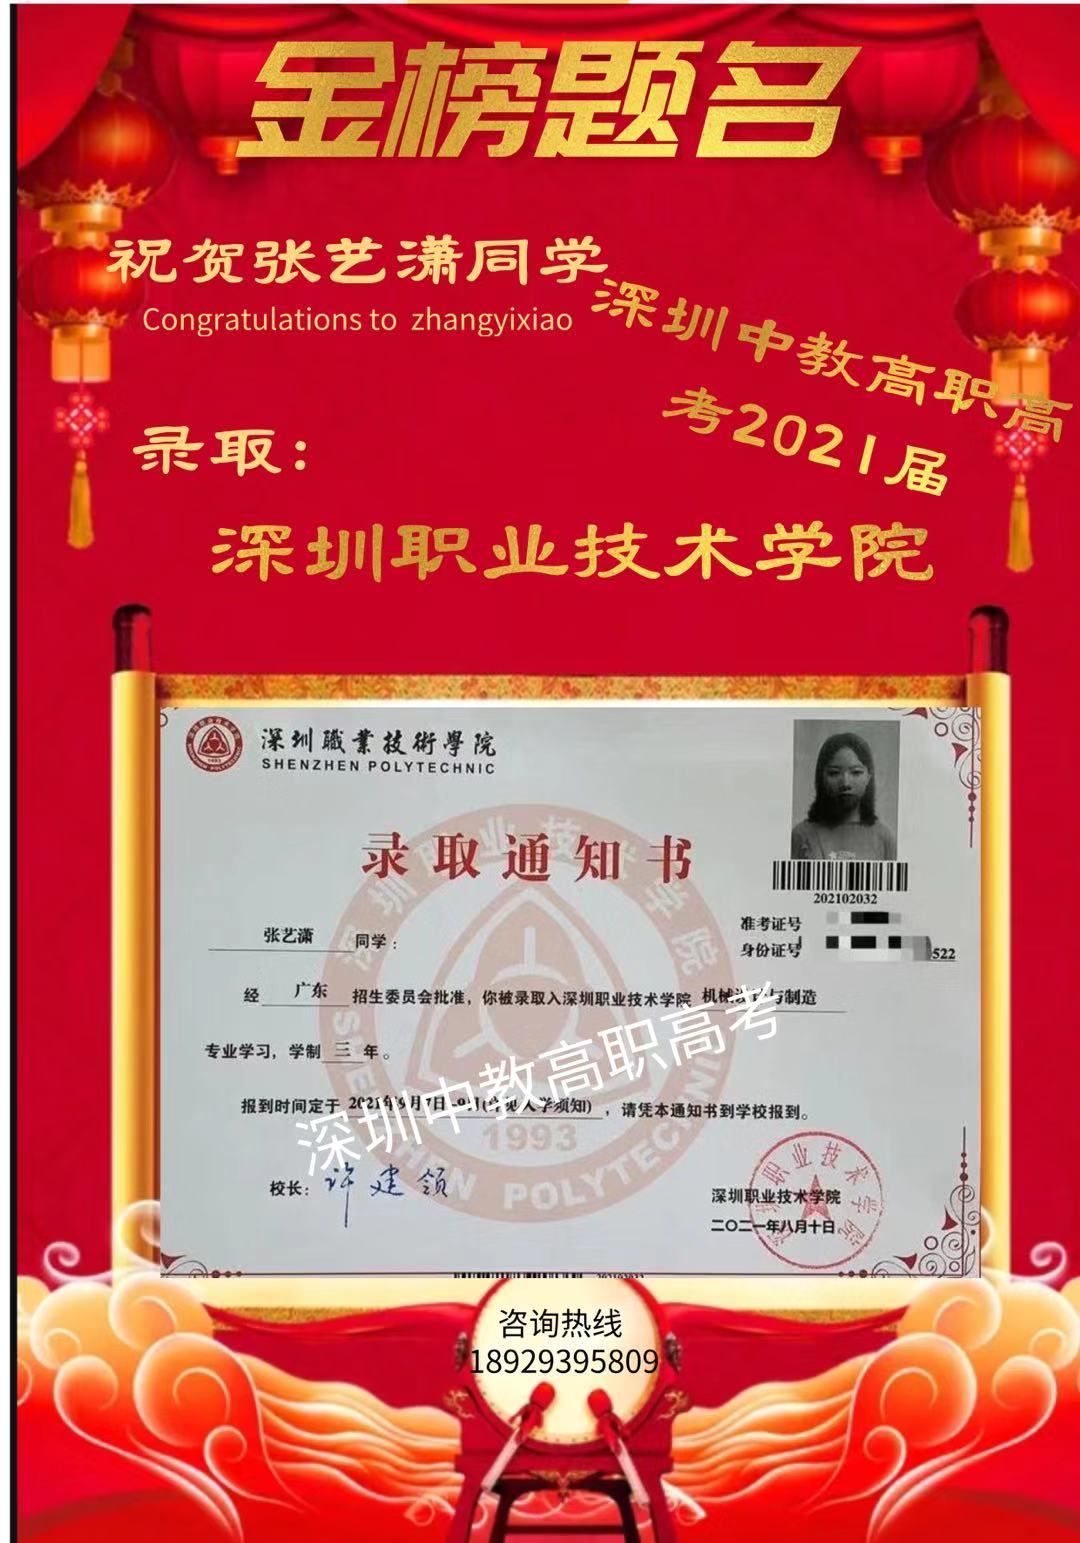 中教培訓2021屆廣東省3+證書高考班及綜合高中班十位“狀元”